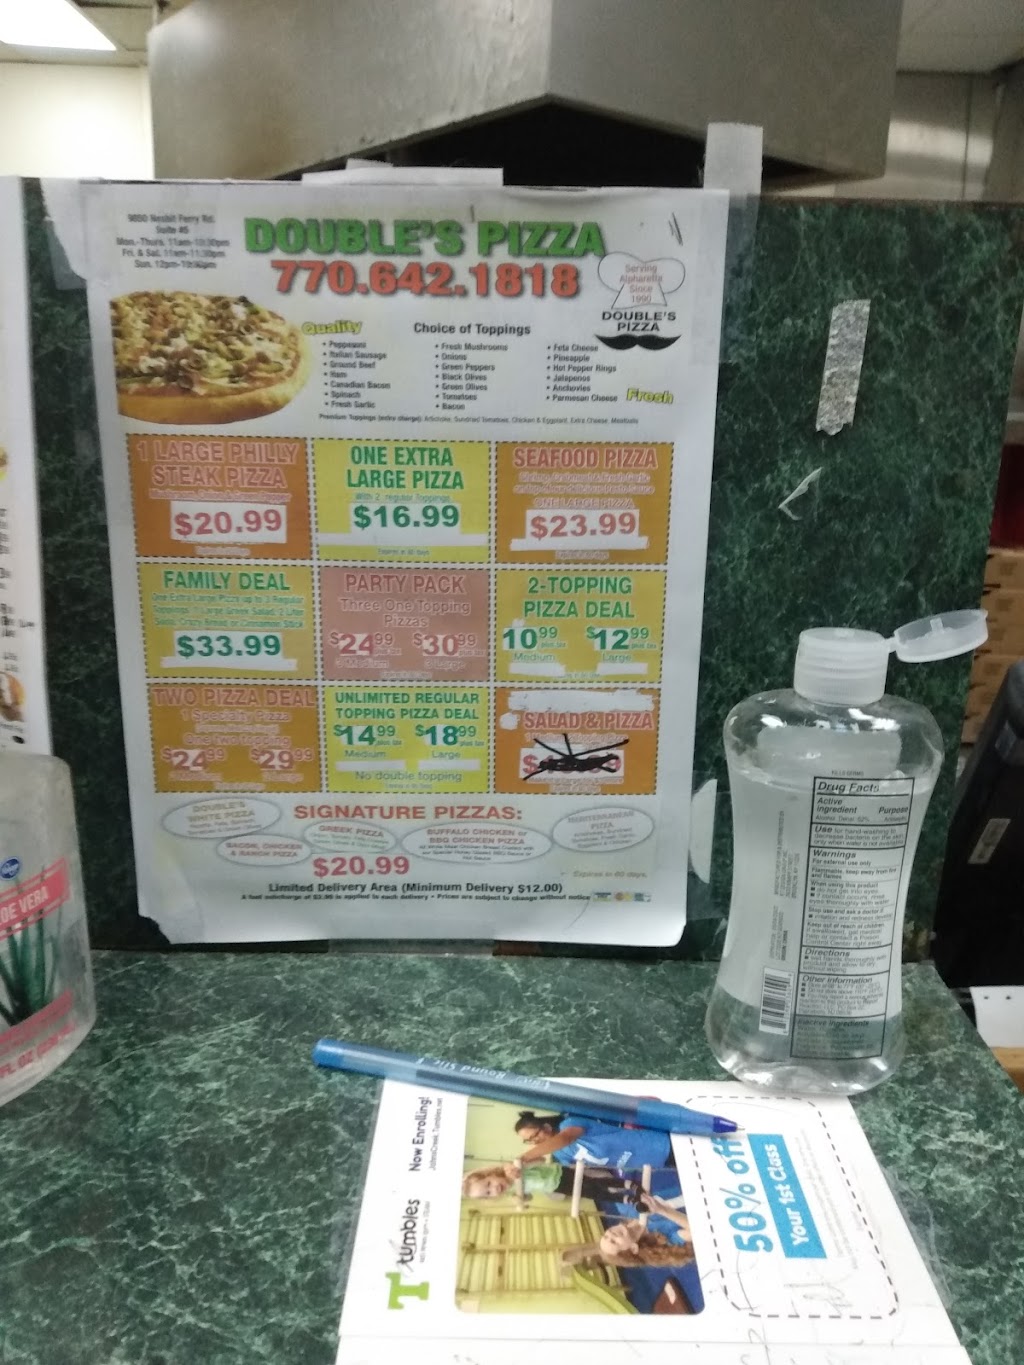 Doubles Pizza | 9850 Nesbit Ferry Rd # 5, Alpharetta, GA 30022 | Phone: (770) 642-1818